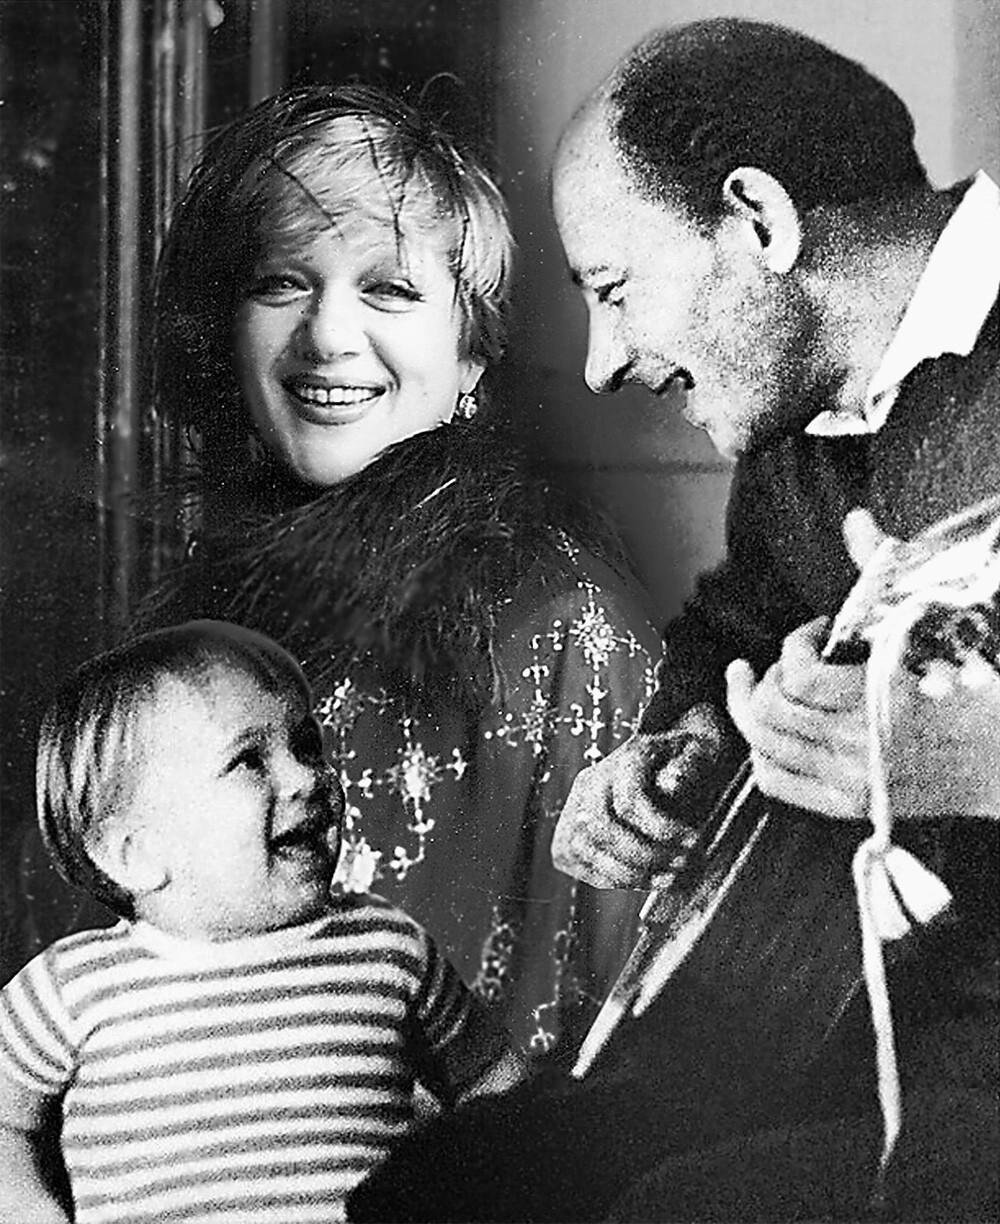 Евгений Евстигнеев с женой Галиной Волчек и сыном Денисом. Артисты были женаты с 1955 по 1964 годы.